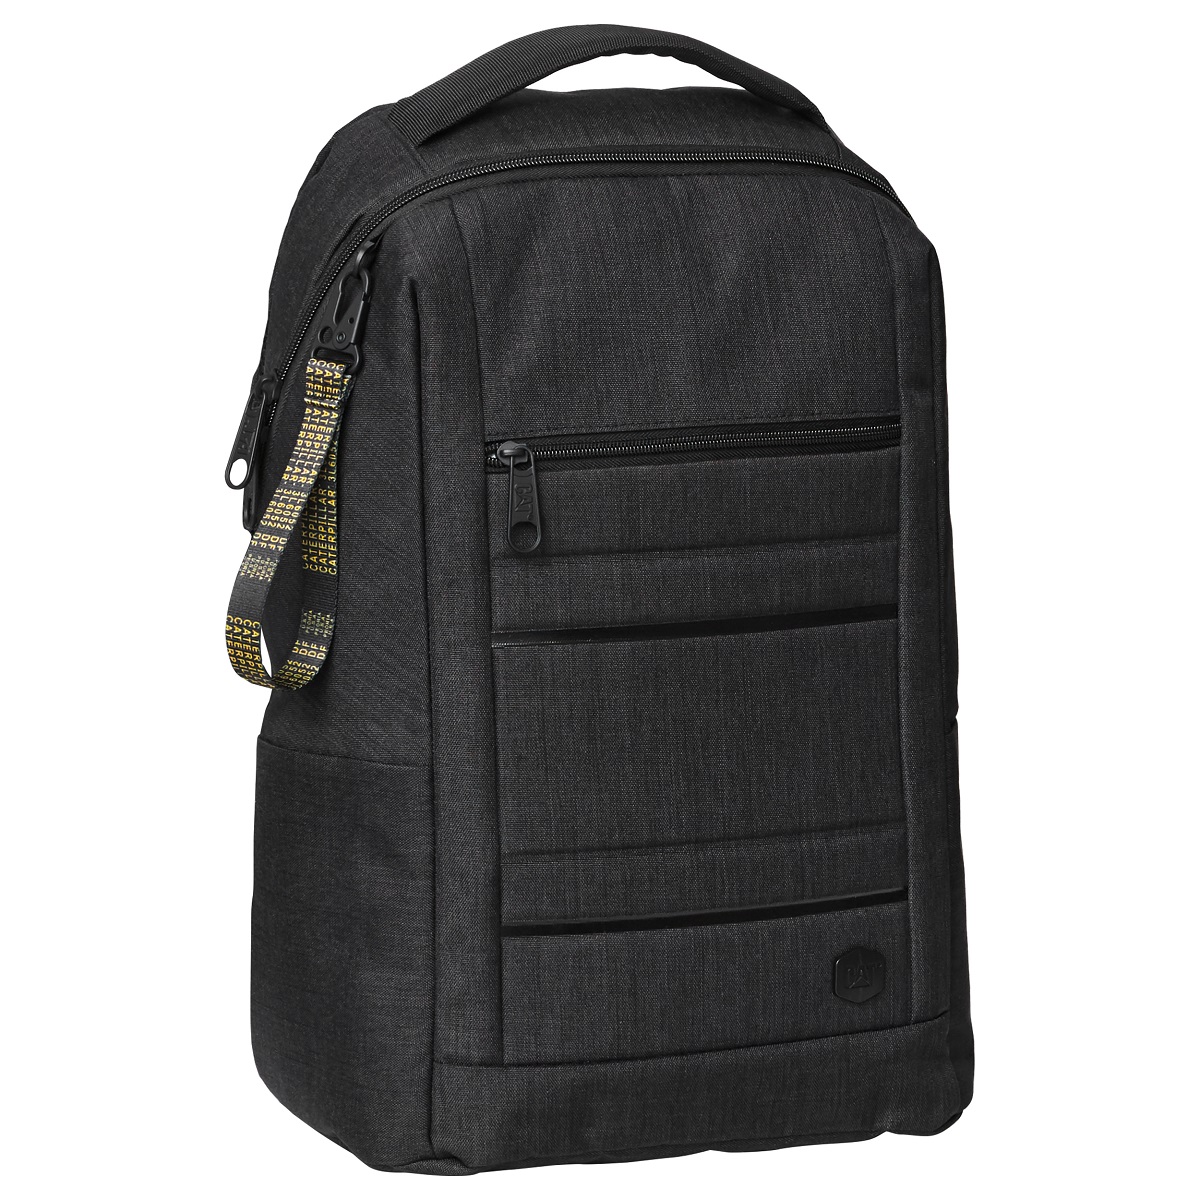 CAT - B. Holt Laptop Backpack - Black (84027-500)